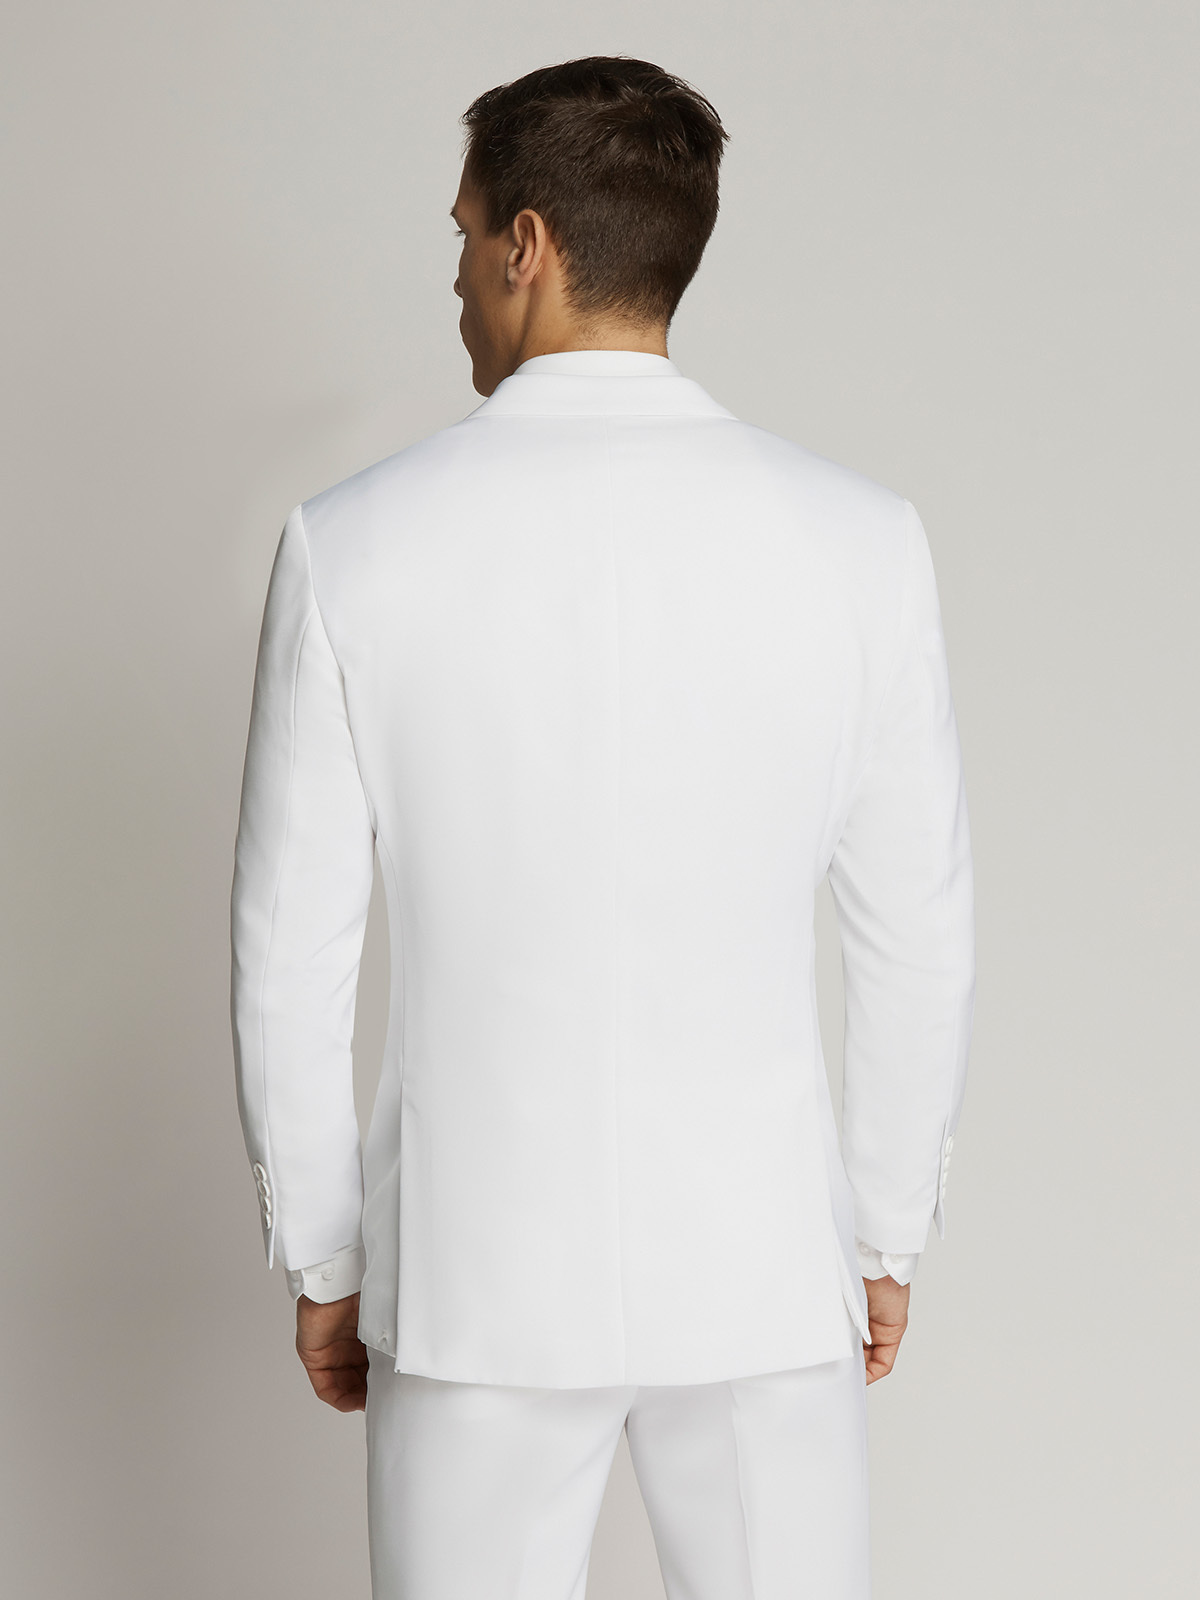 Vegas Fine Twill Plain Microfibre Suit White - Ambassador Collection